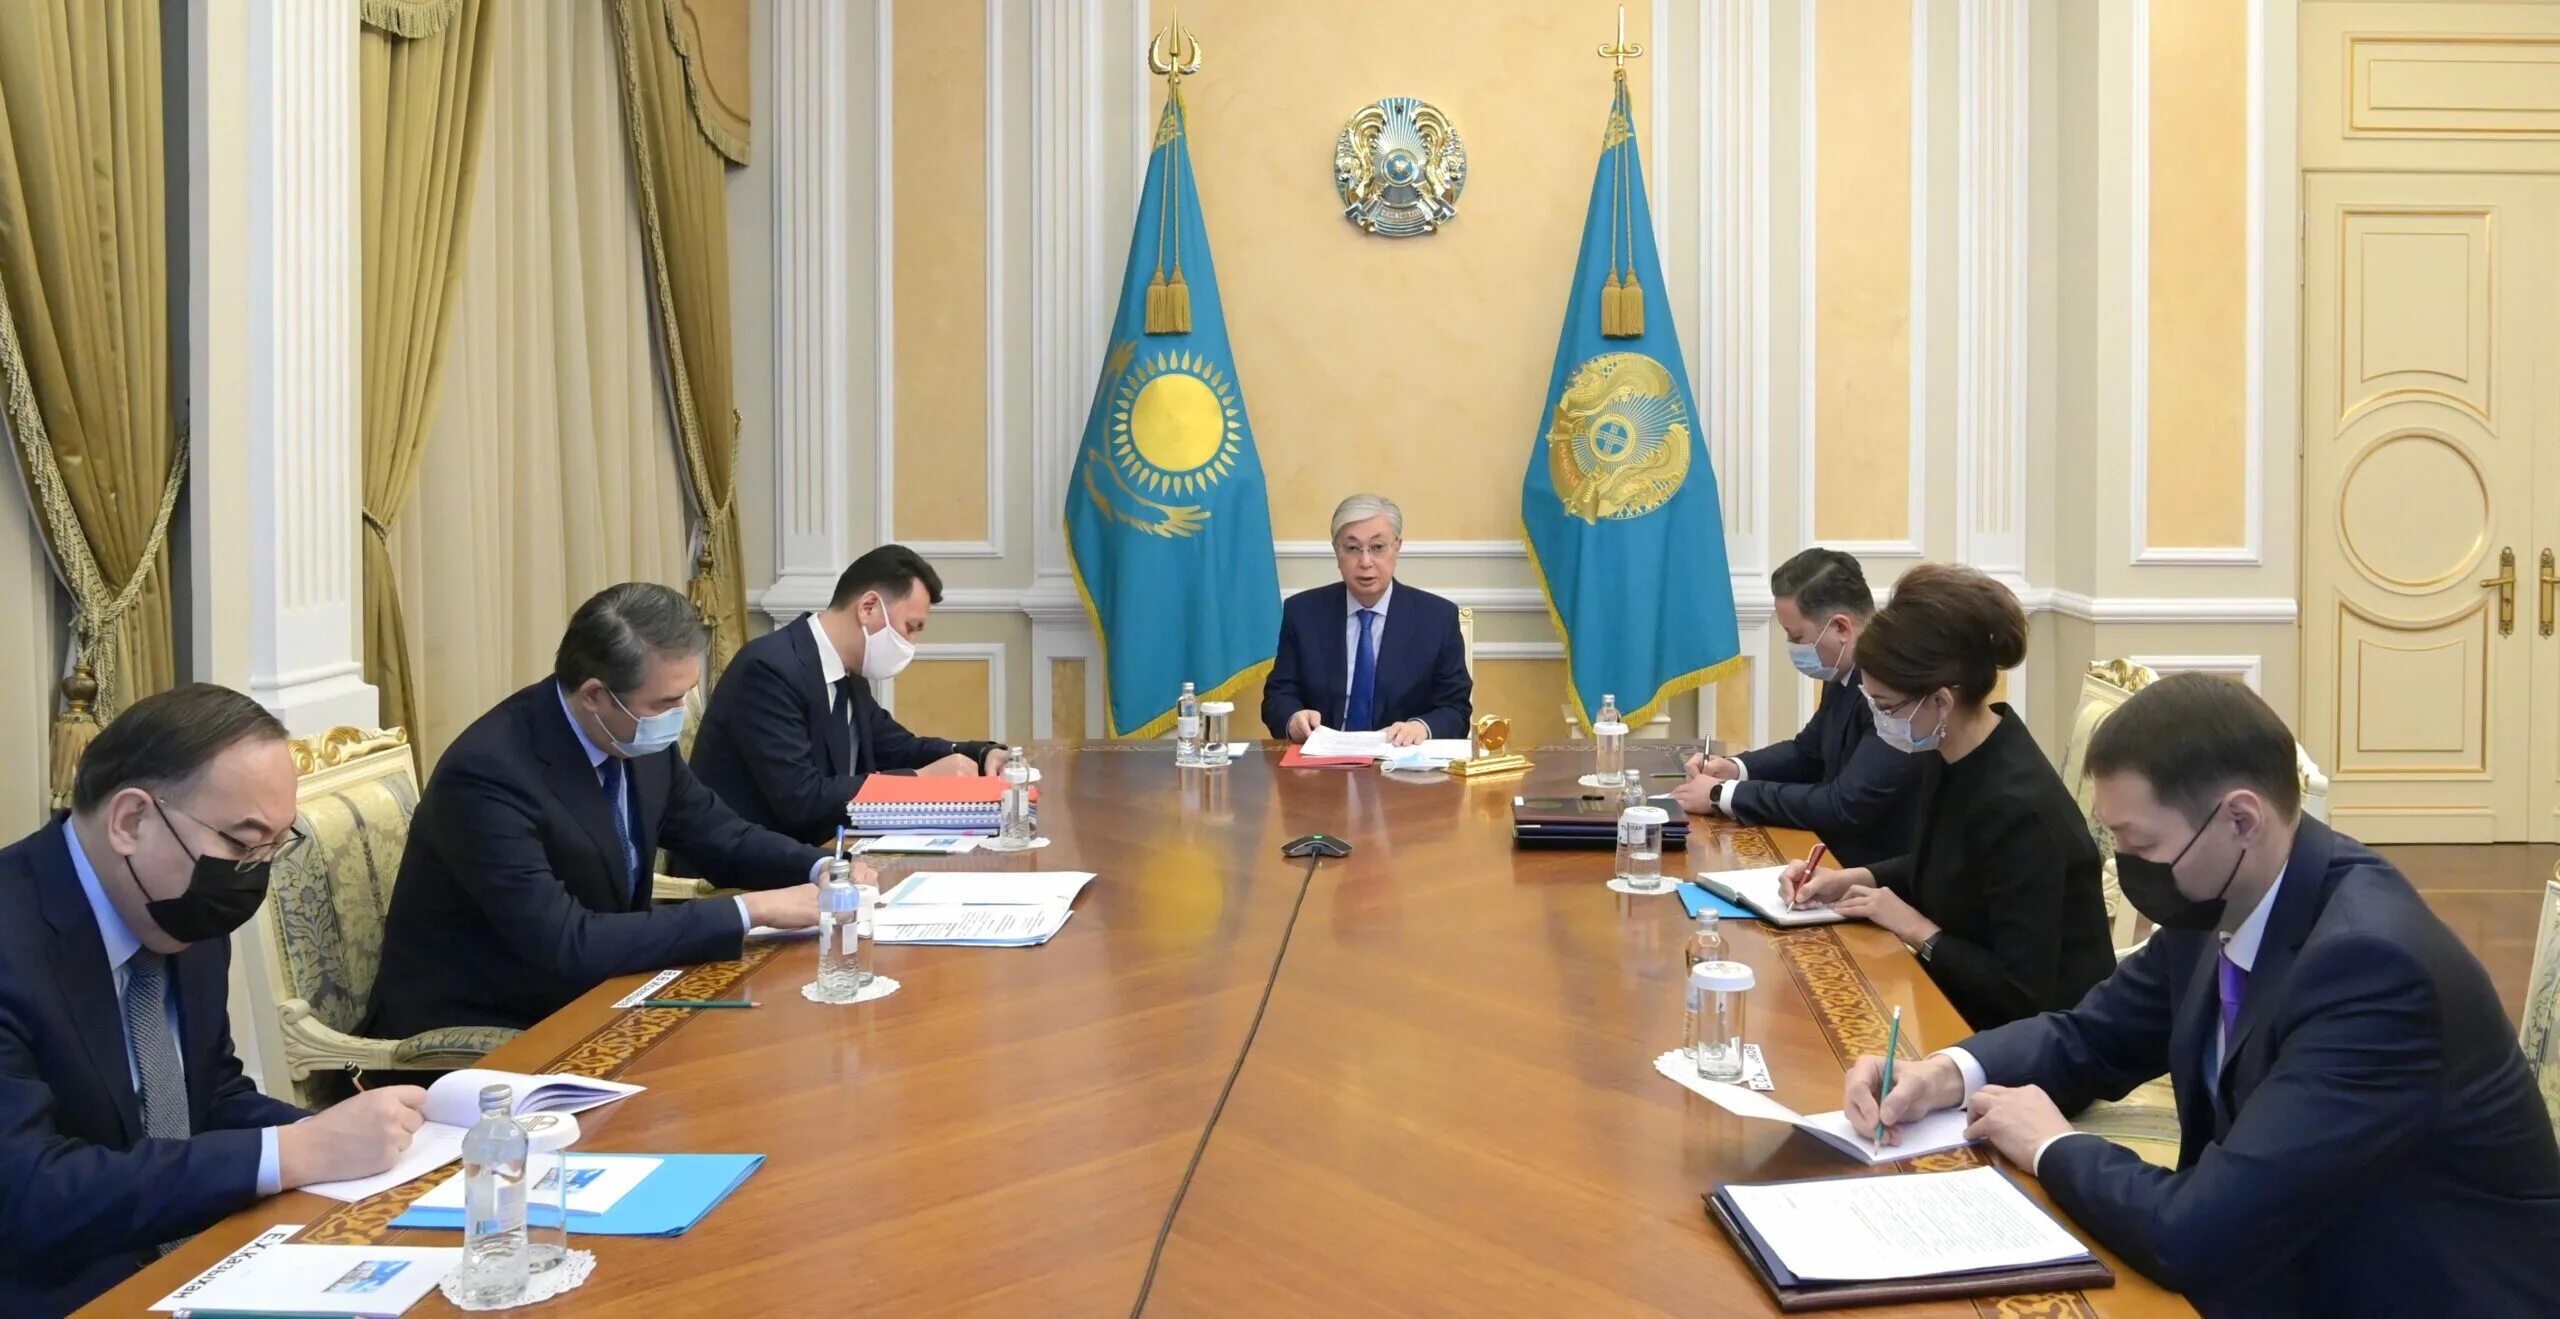 Оперативный совет безопасности. Совет безопасности. Совет безопасности Республики Казахстан. Совещание руководителей.